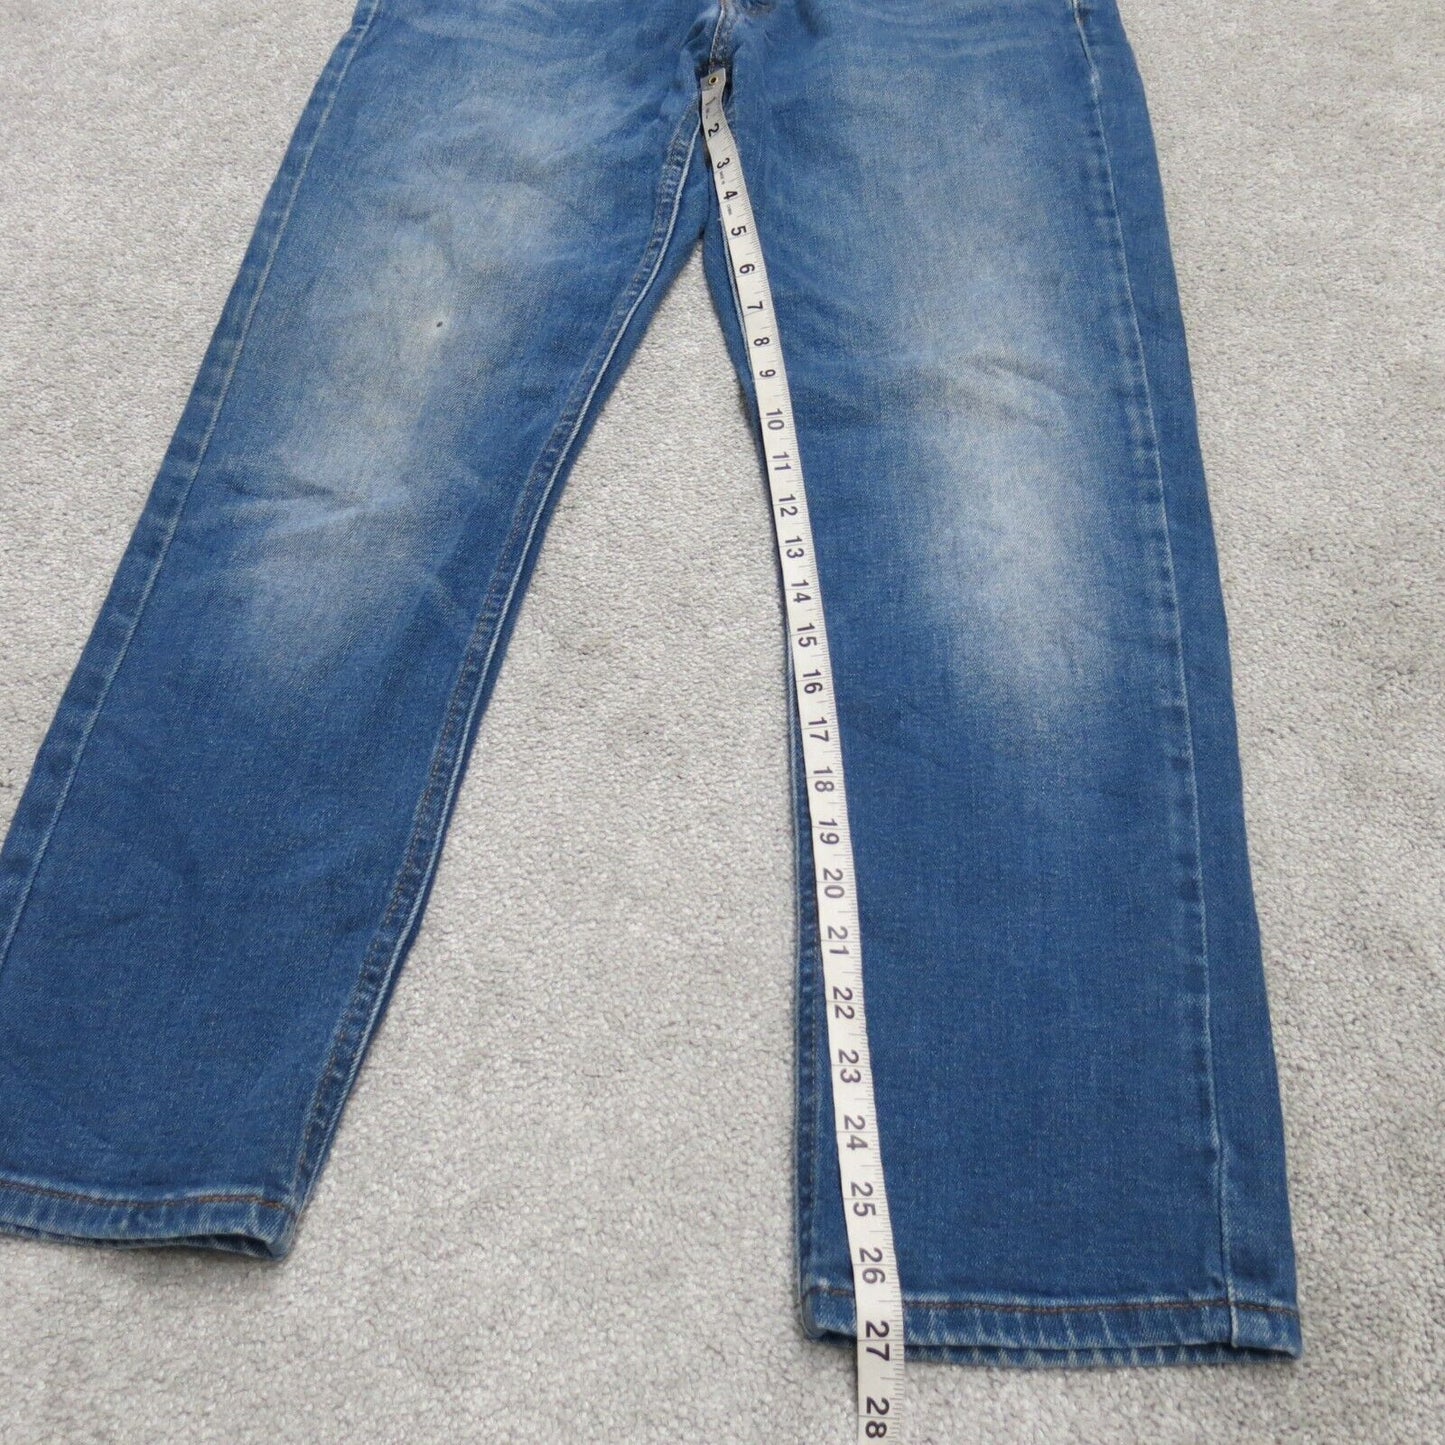 Levis 541 Mens Straight Leg Jeans Denim Stretch Low Rise Blue Size W31XL30